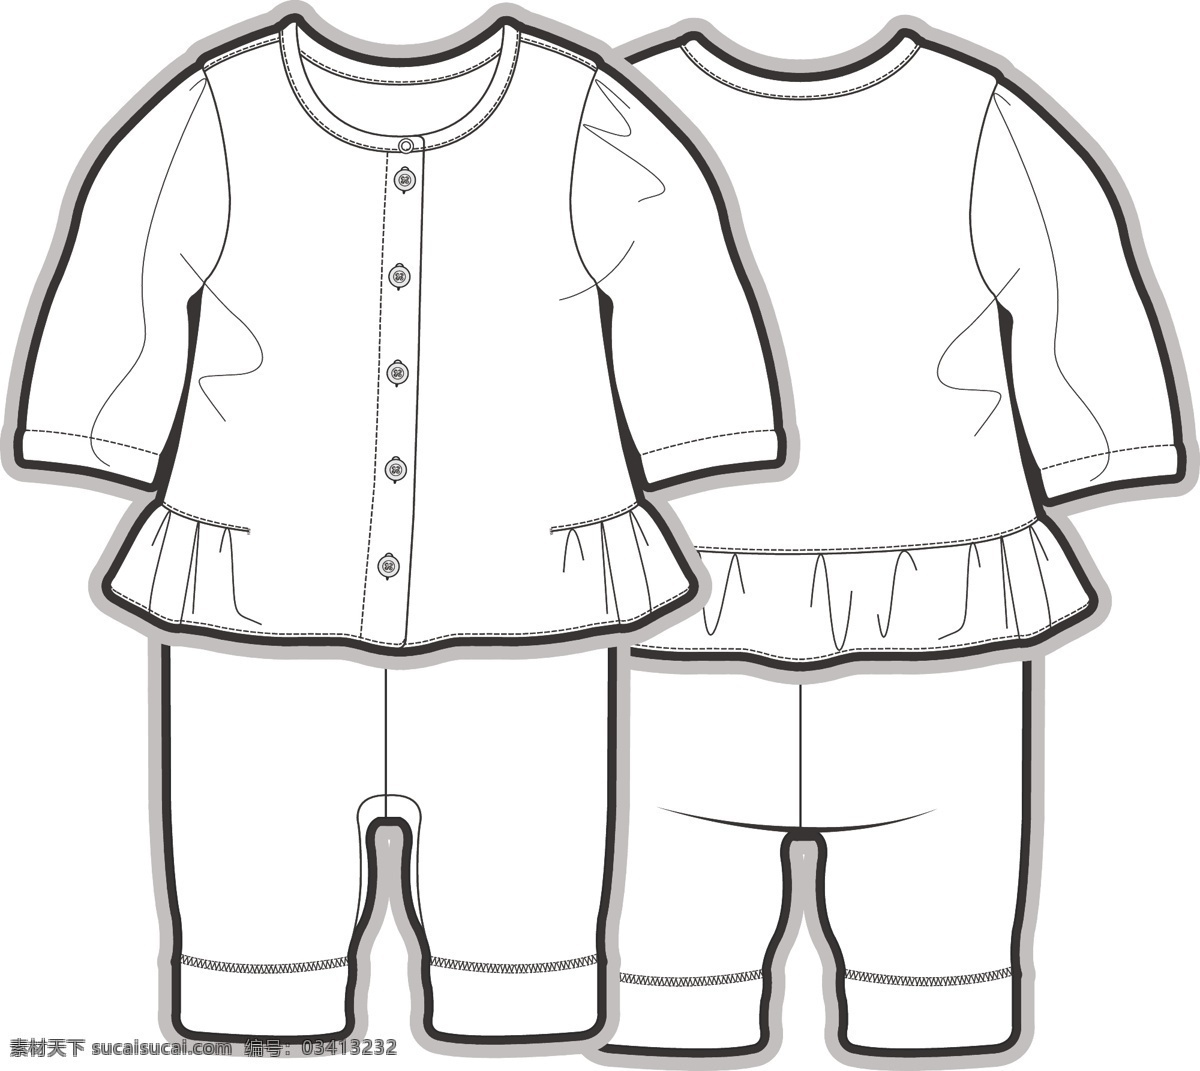 长袖 套装 小宝宝 黑白 服装 线 稿 矢量 设计素材 花边 上衣 儿童服装设计 可爱 手绘 保暖 线条 源文件